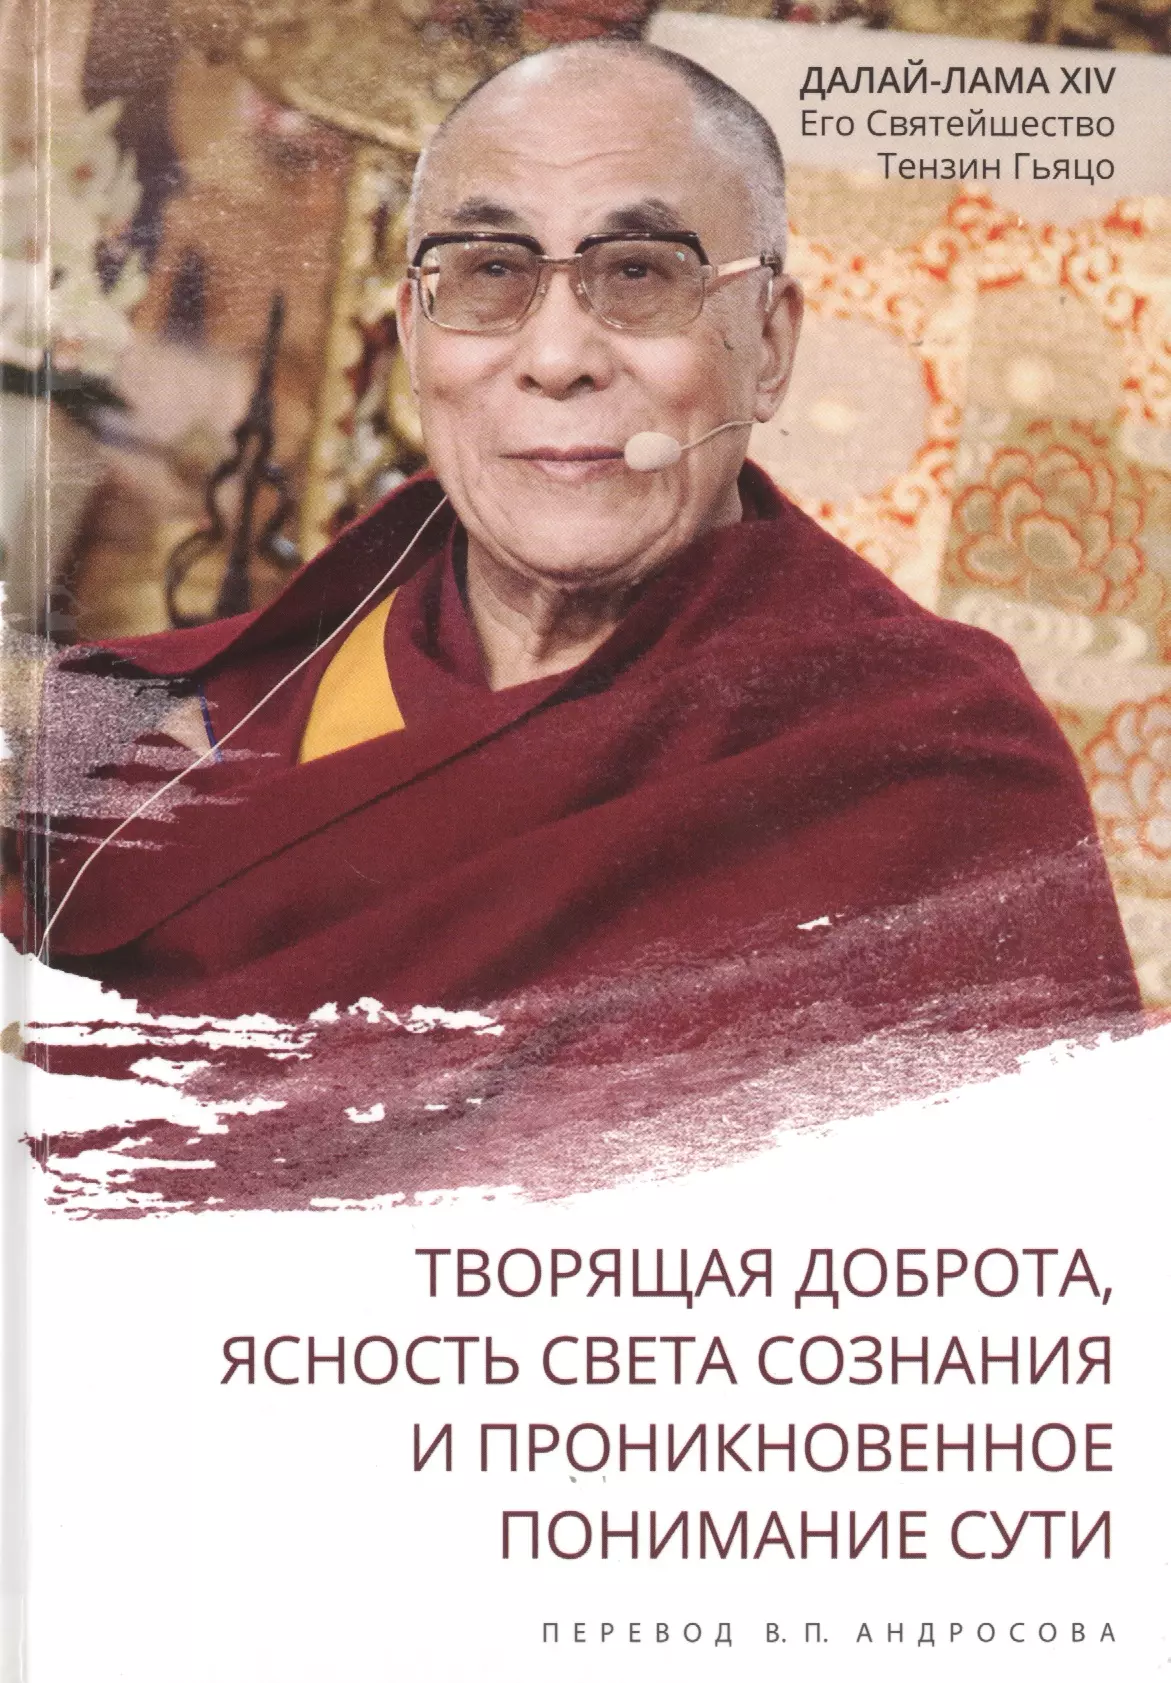 Андросов В.П., Далай Лама 14 Нгагванг Ловзанг Тэнцзин Гьямцхо, Далай-лама XIV - Творящая доброта, ясность света сознания и проникновенное понимание сути